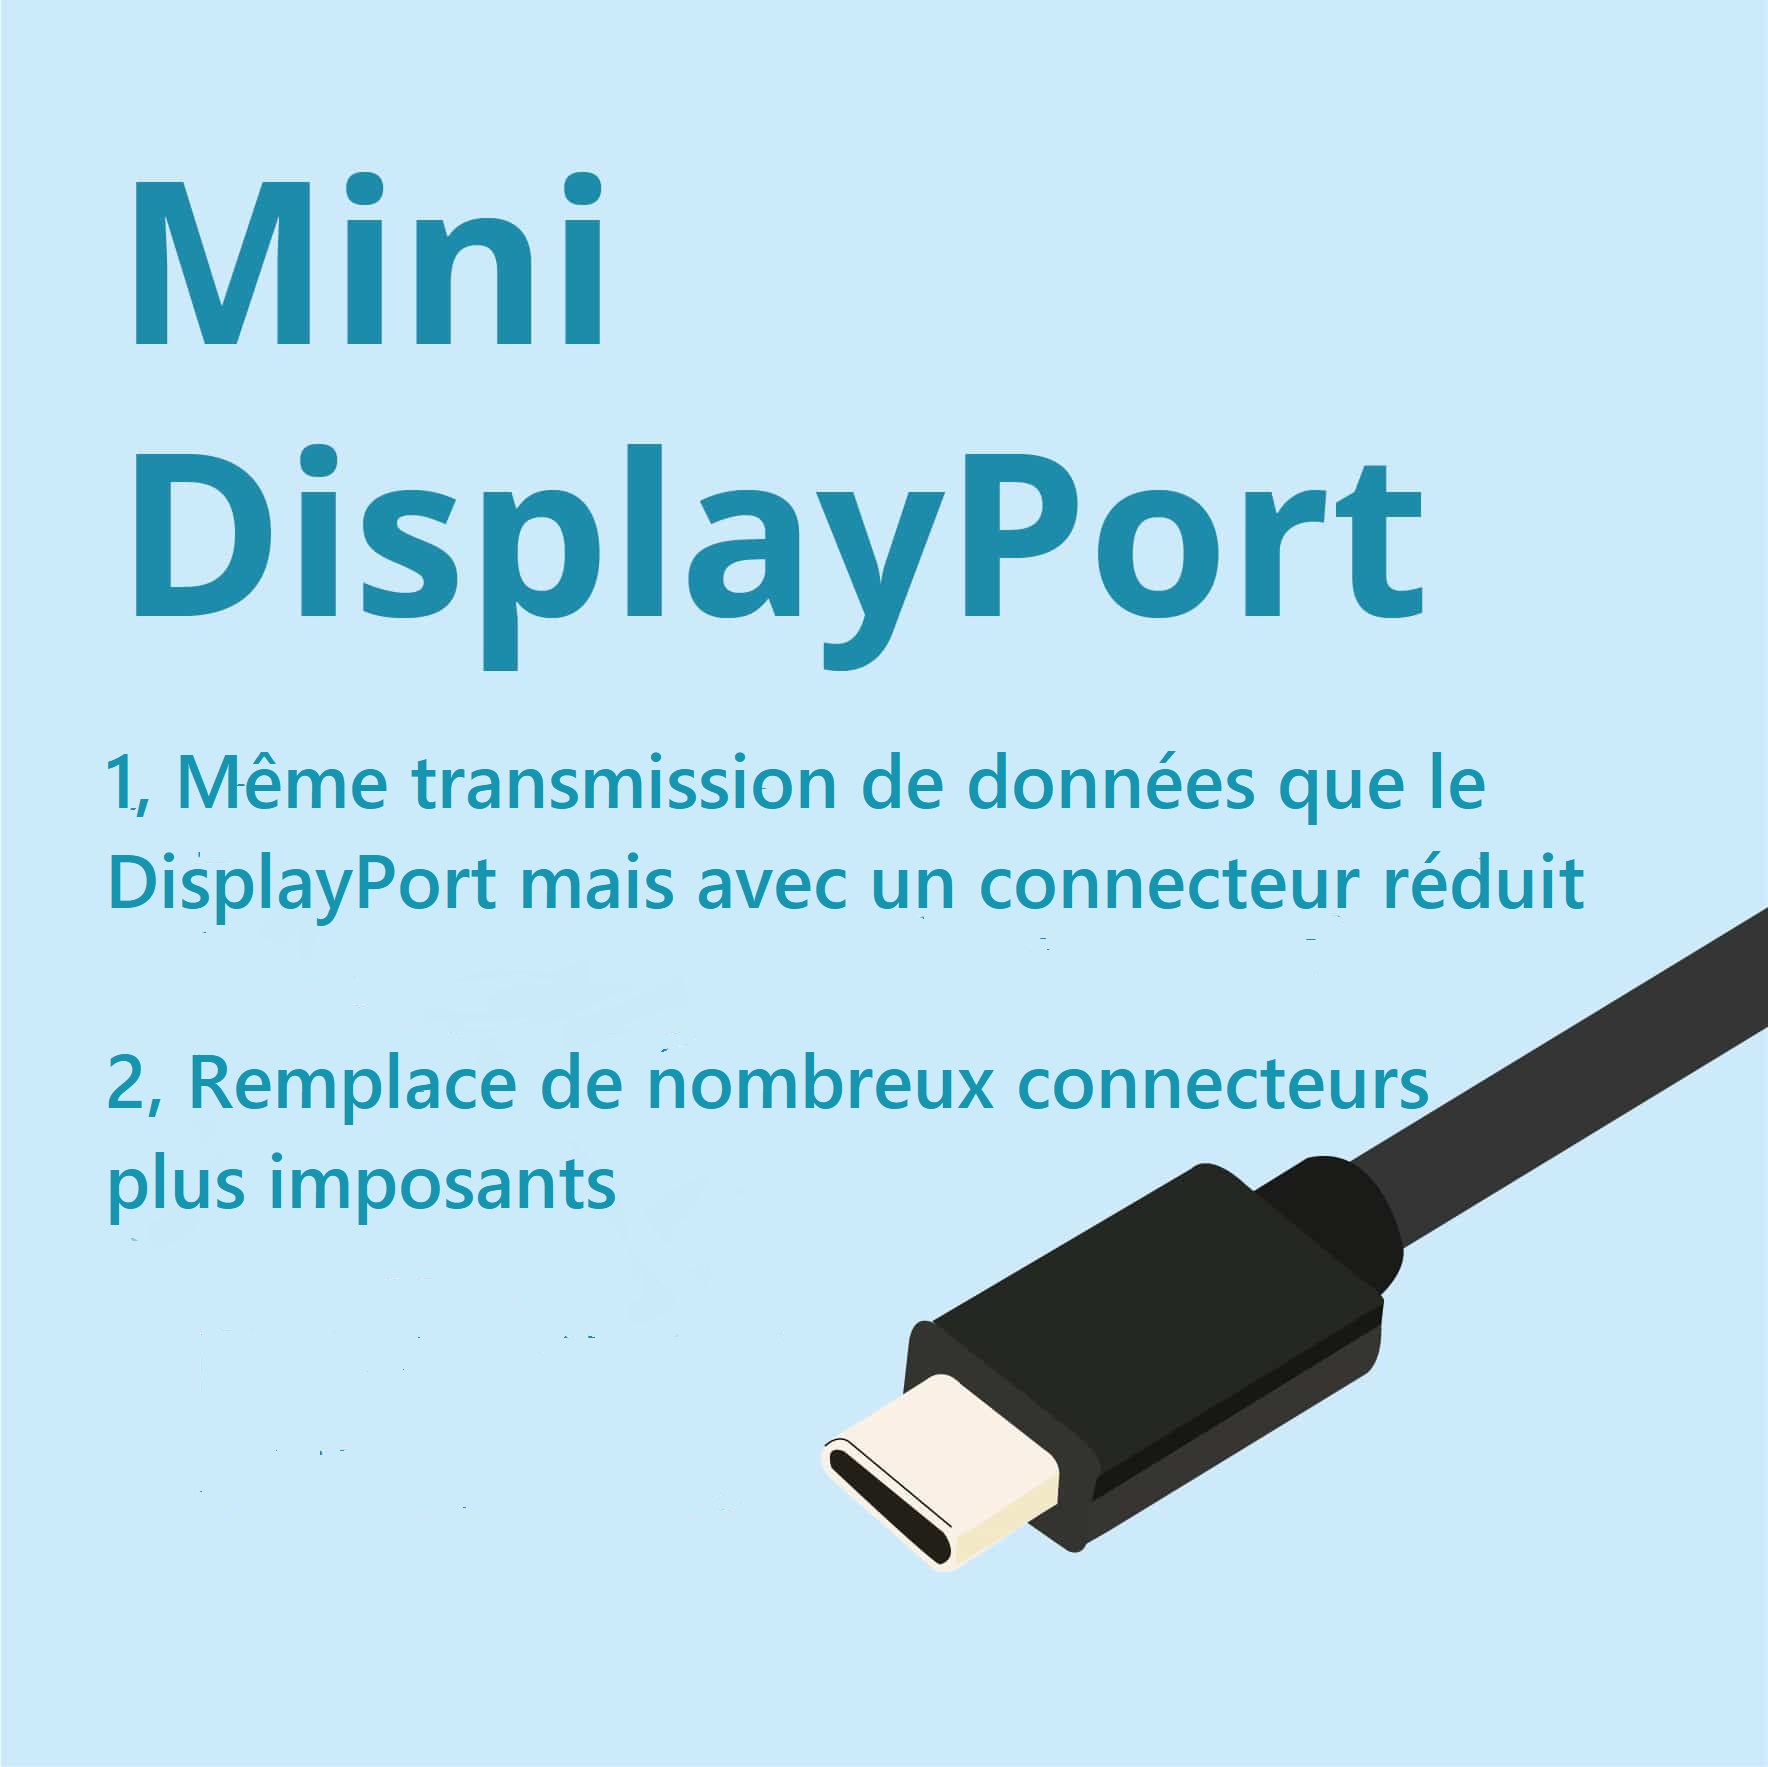 Mini DisplayPort